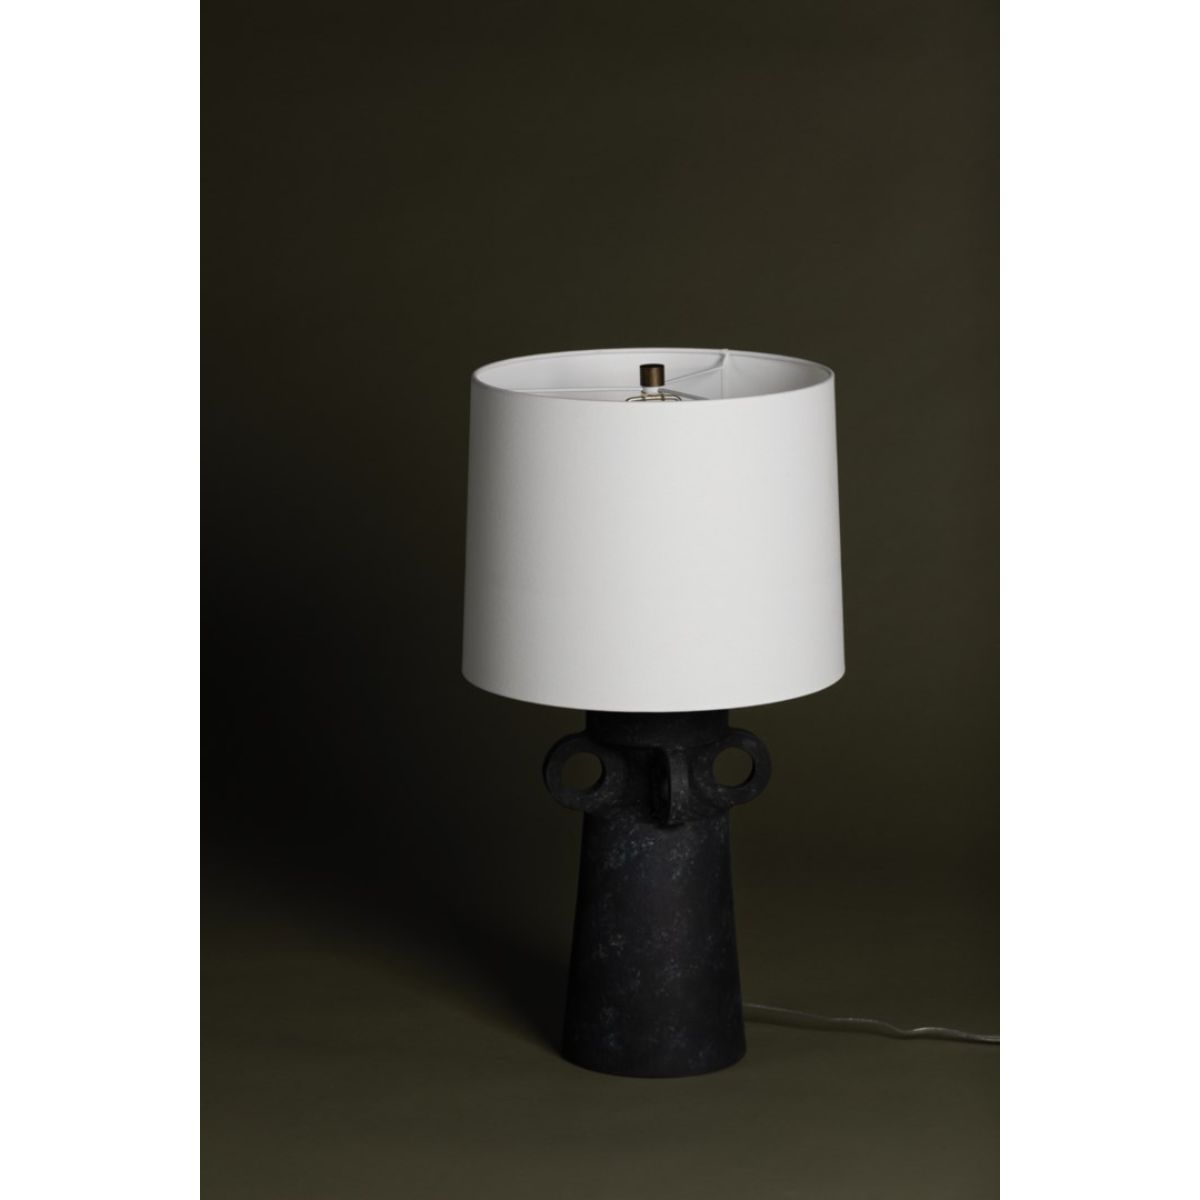 Santa Cruz Table Lamp Ceramic Artifact Black with Patina Brass Accents